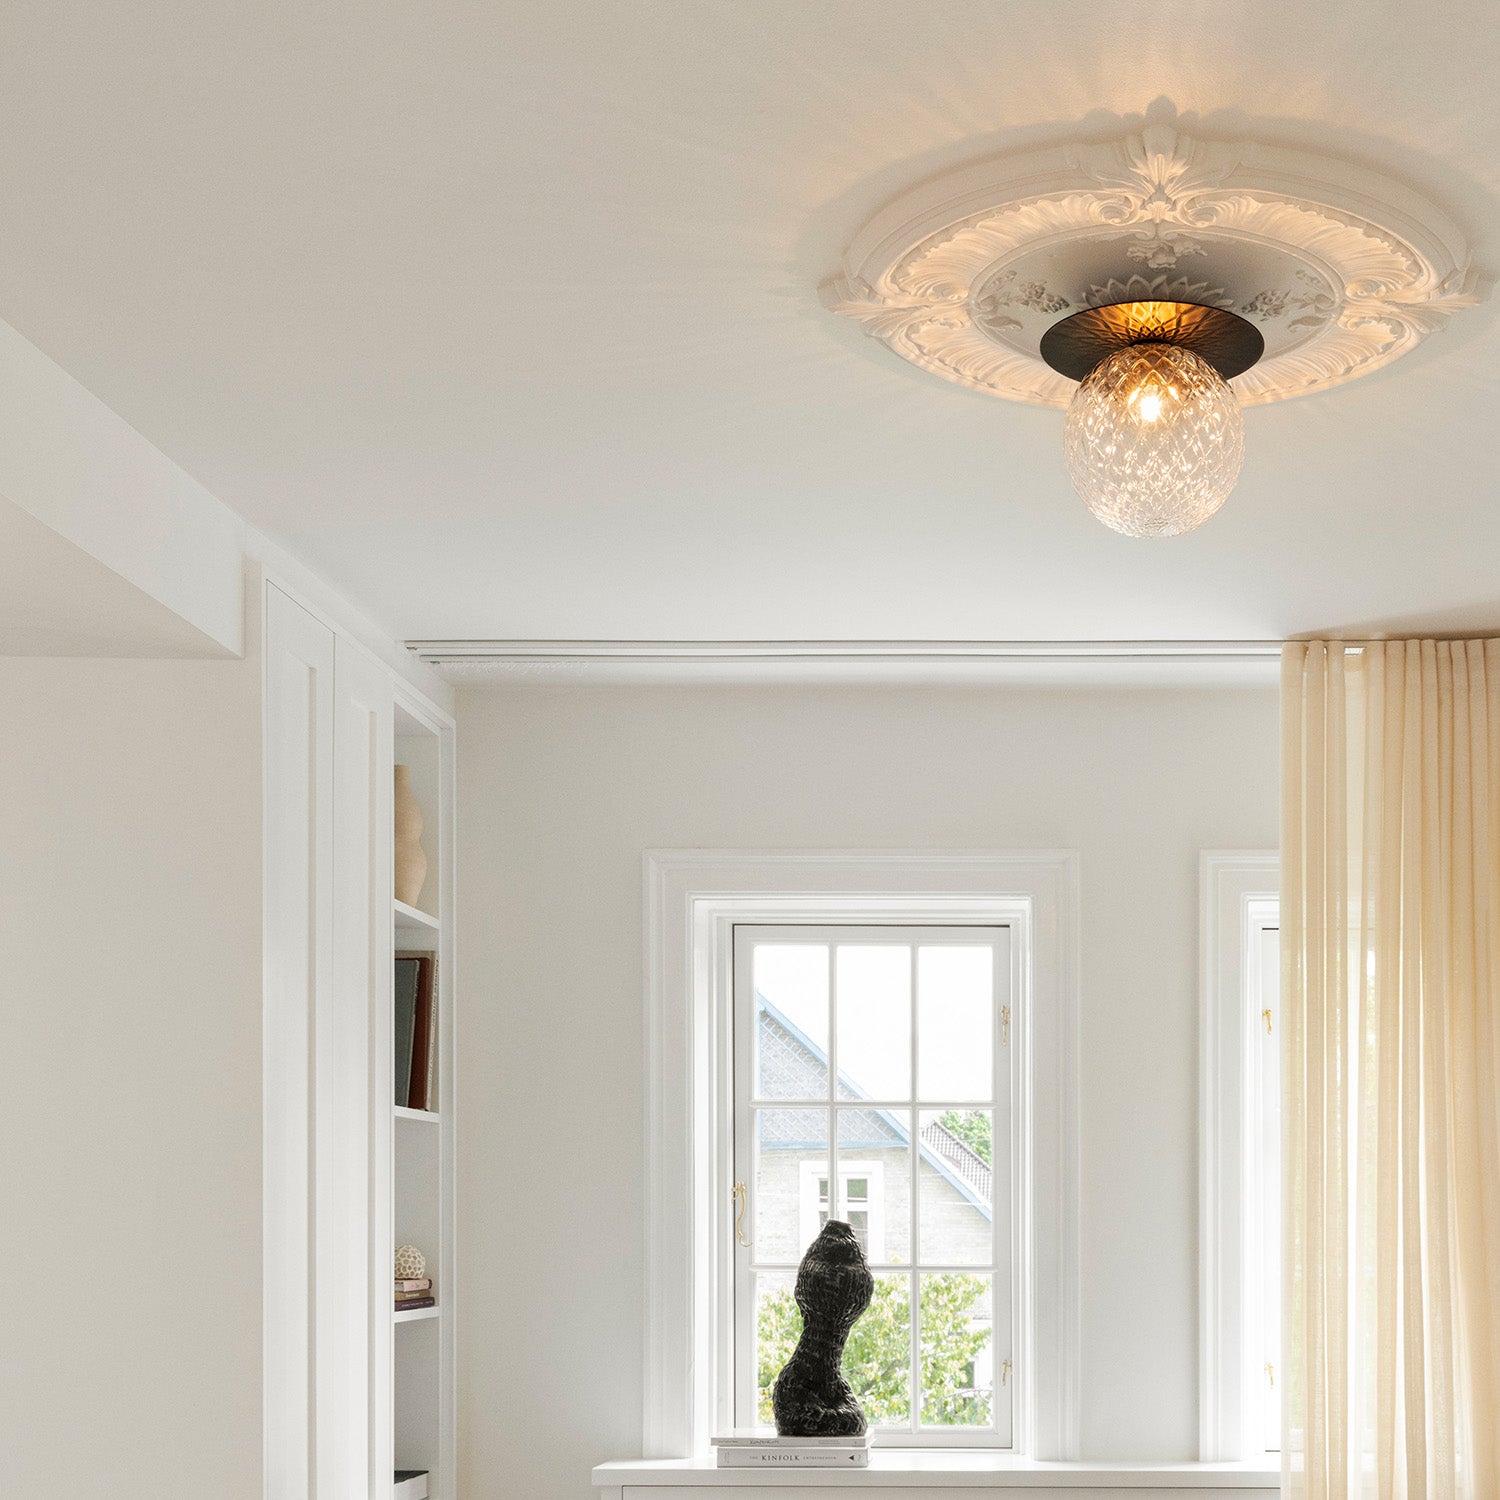 LIILA 1 Optic Ceiling - Elegant luxury designer ceiling light